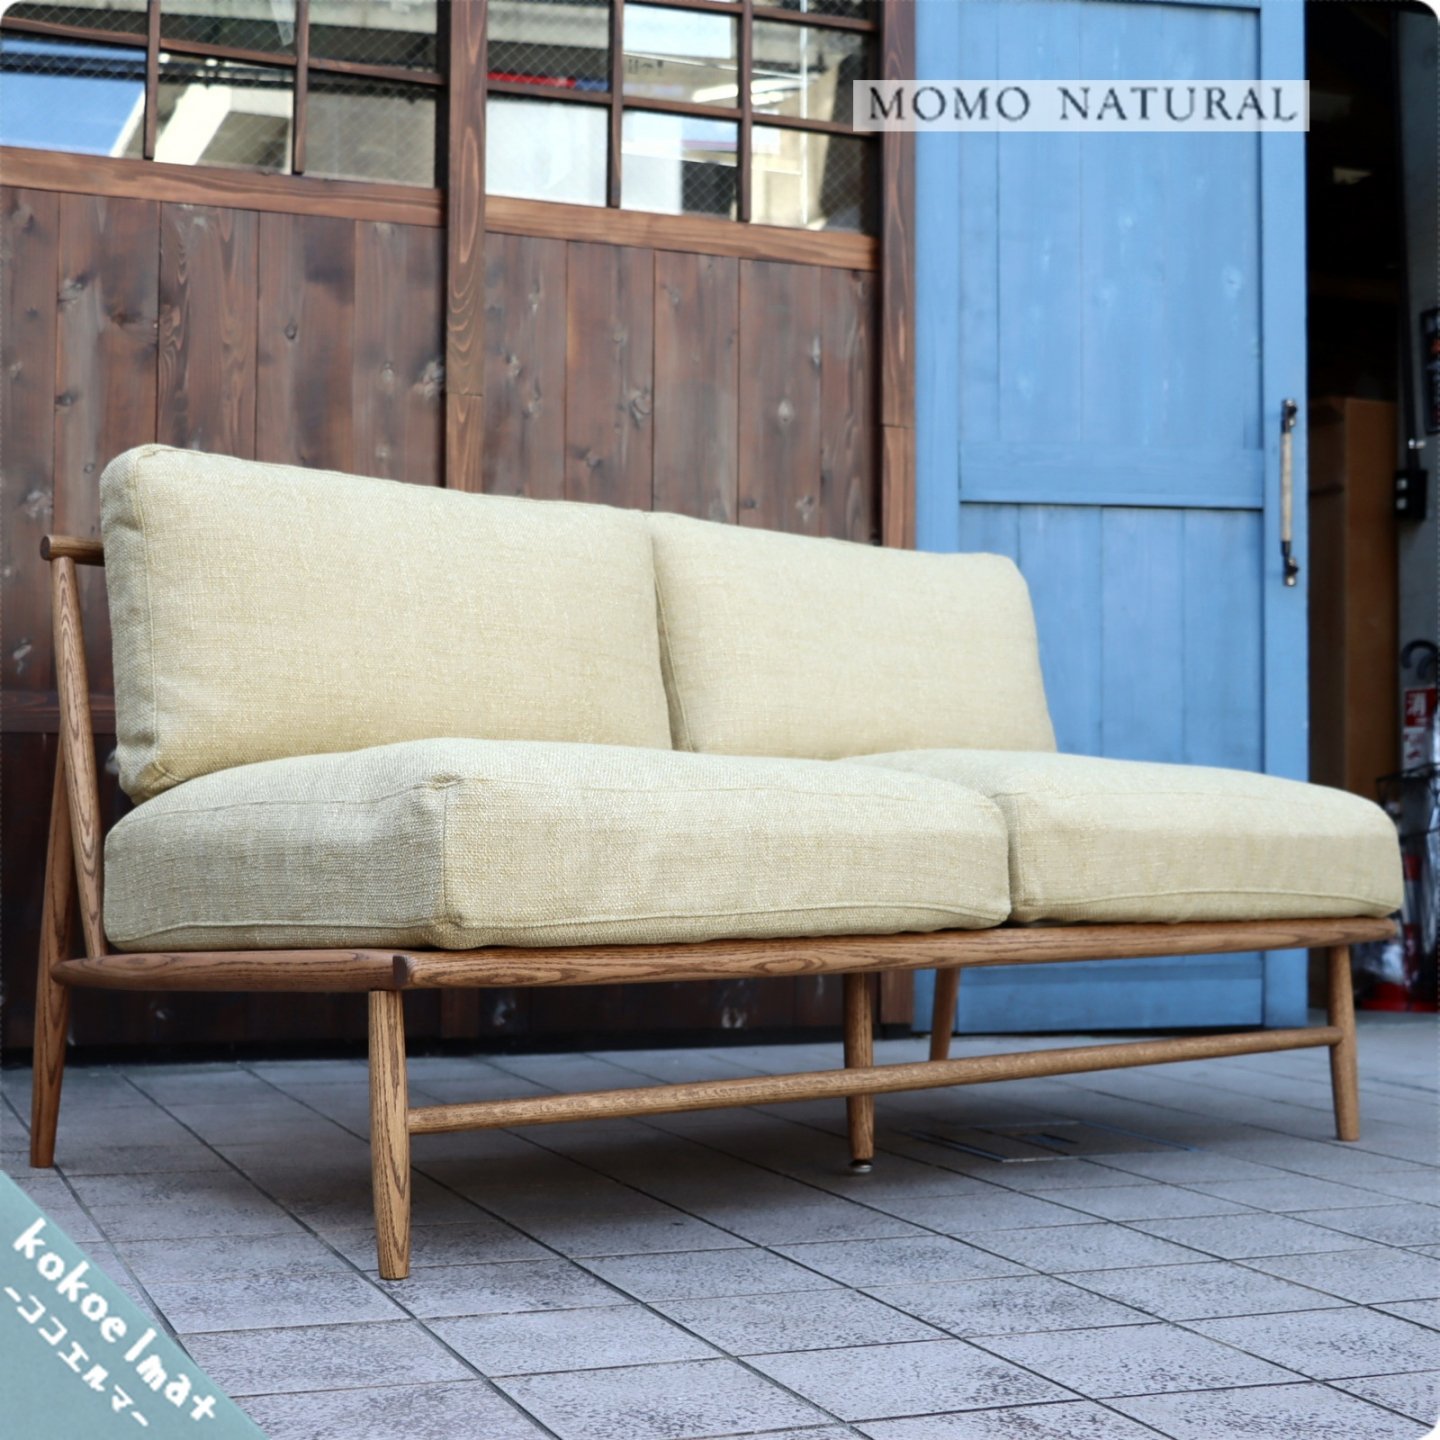 Momo Natural モモナチュラル のcloud クラウド 2人掛けソファーです オーク材のナチュラル感とスッキリとしたフレームが魅力の2pソファーは北欧風や西海岸スタイルなどにおススメです Kokoelma ココエルマ 雑貨 中古家具 北欧家具 アンティーク家具の通販